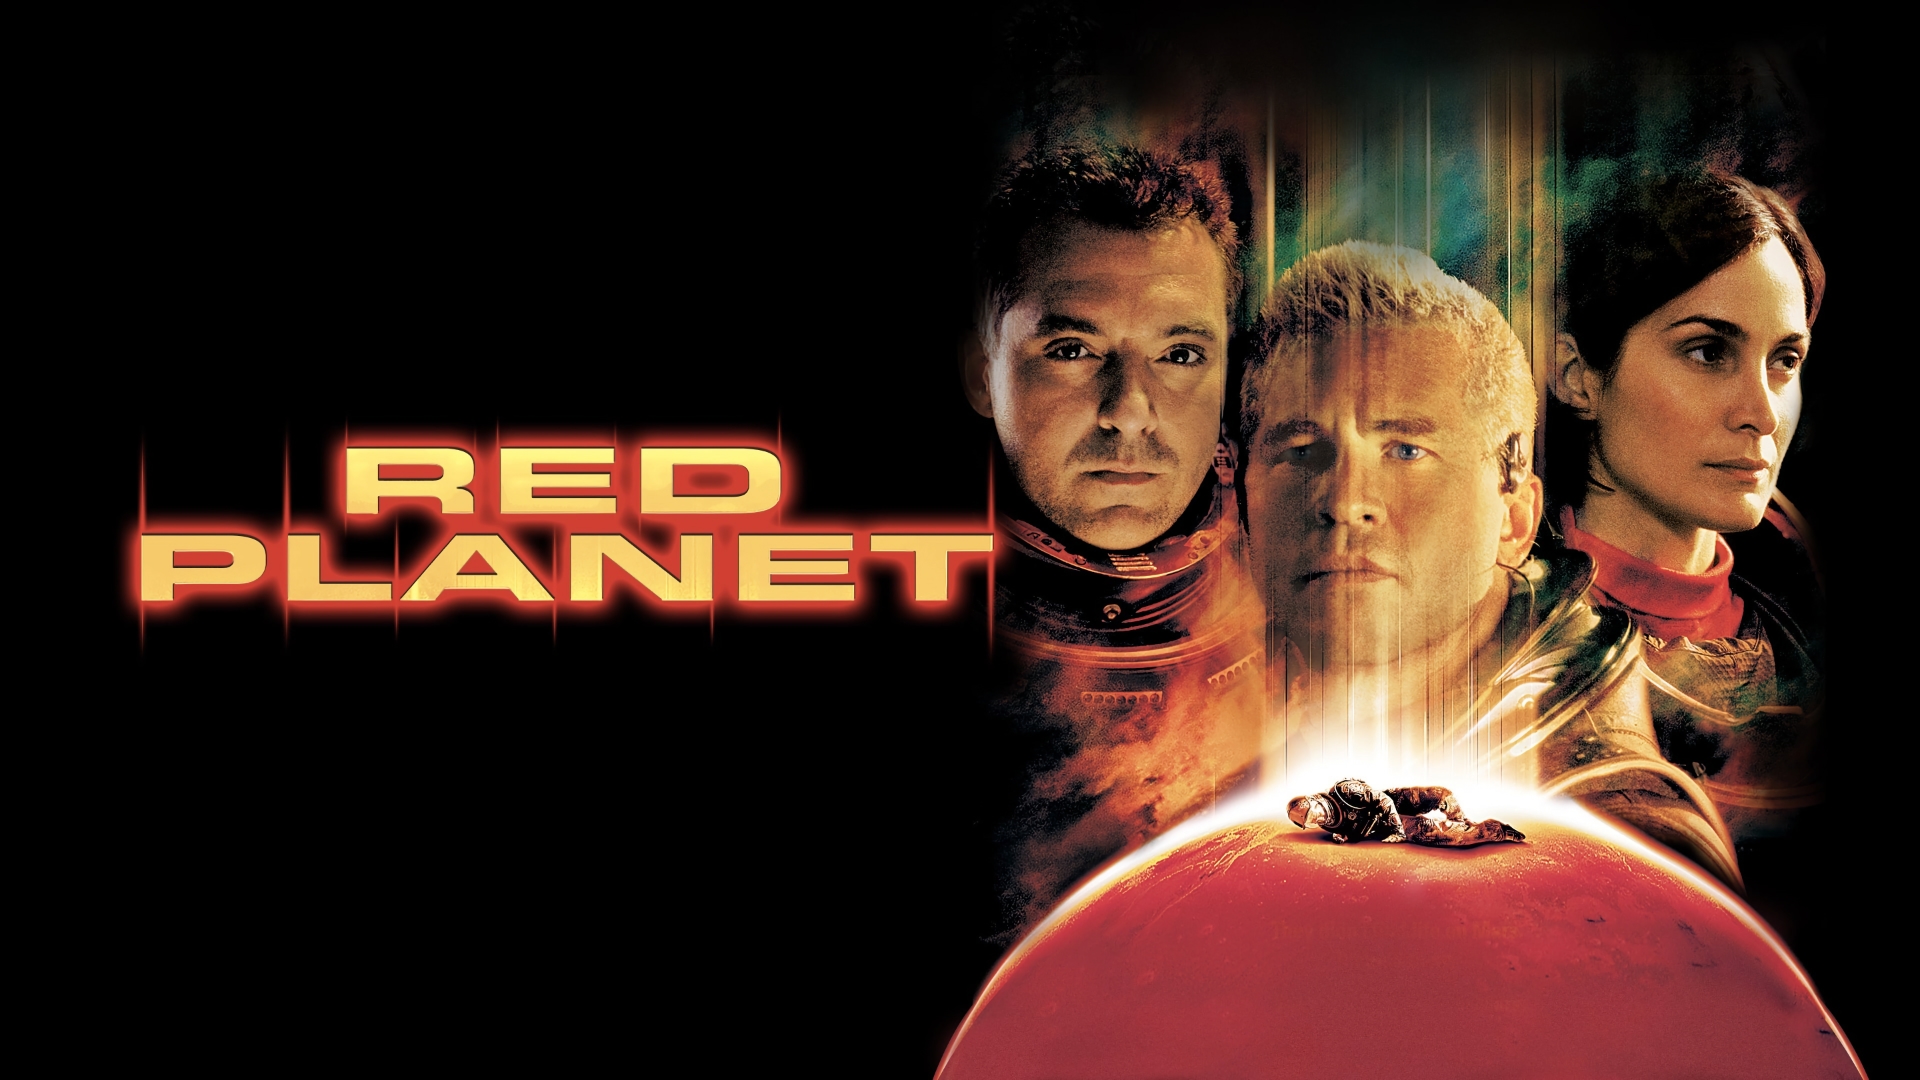 innovazione del pensiero: Red Planet (Pianeta Rosso) è un film di grande attualità